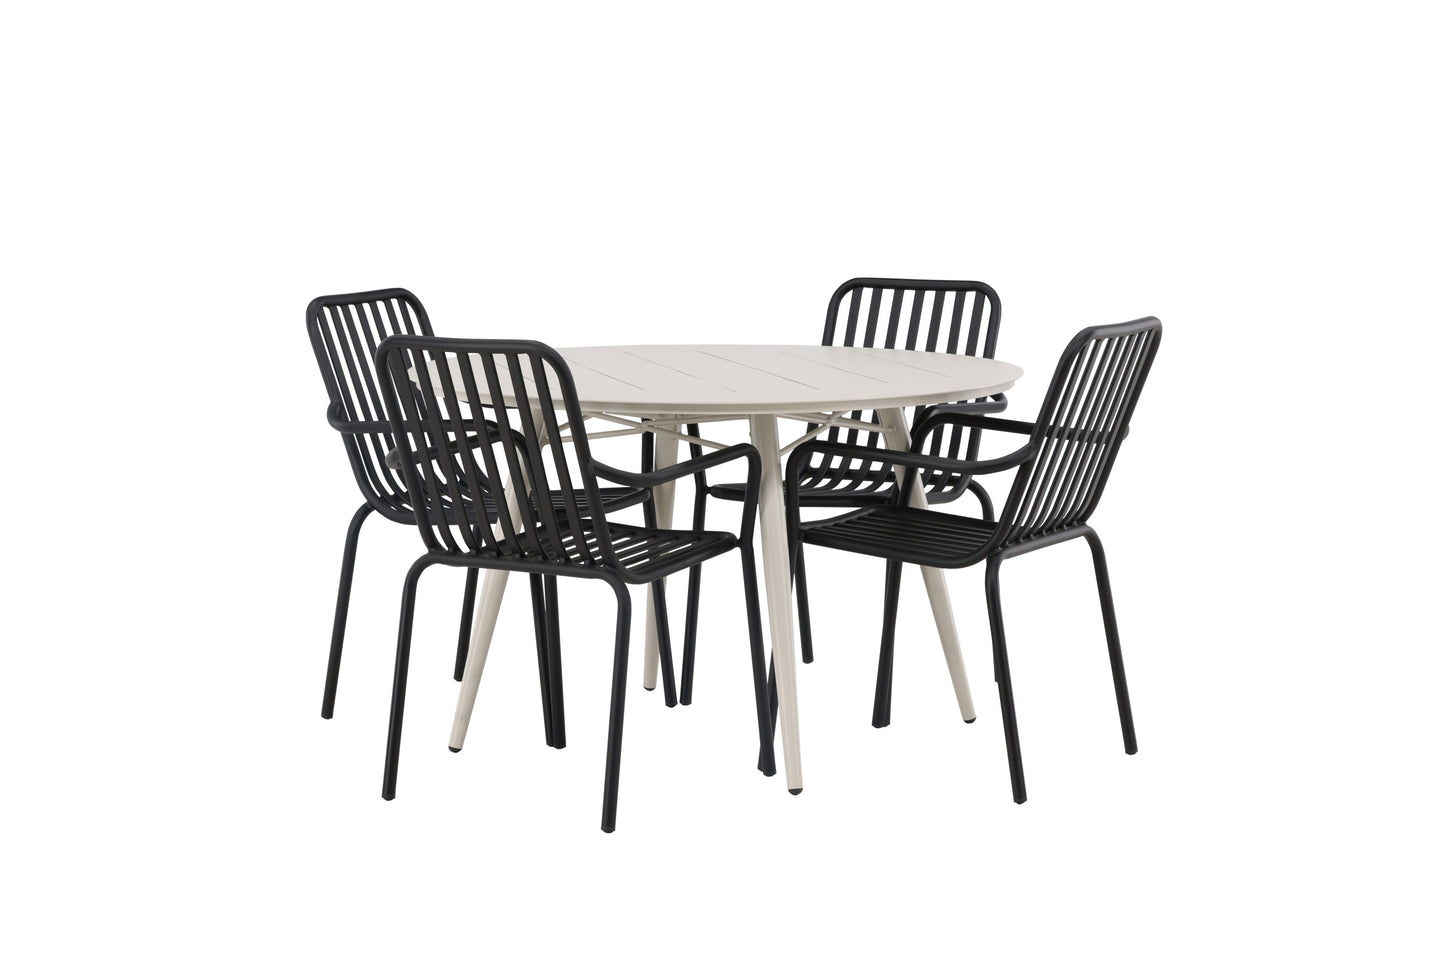 Lia - Spisebord, Beige - Rundt 120 cm + Pekig stol Aluminium - Sort